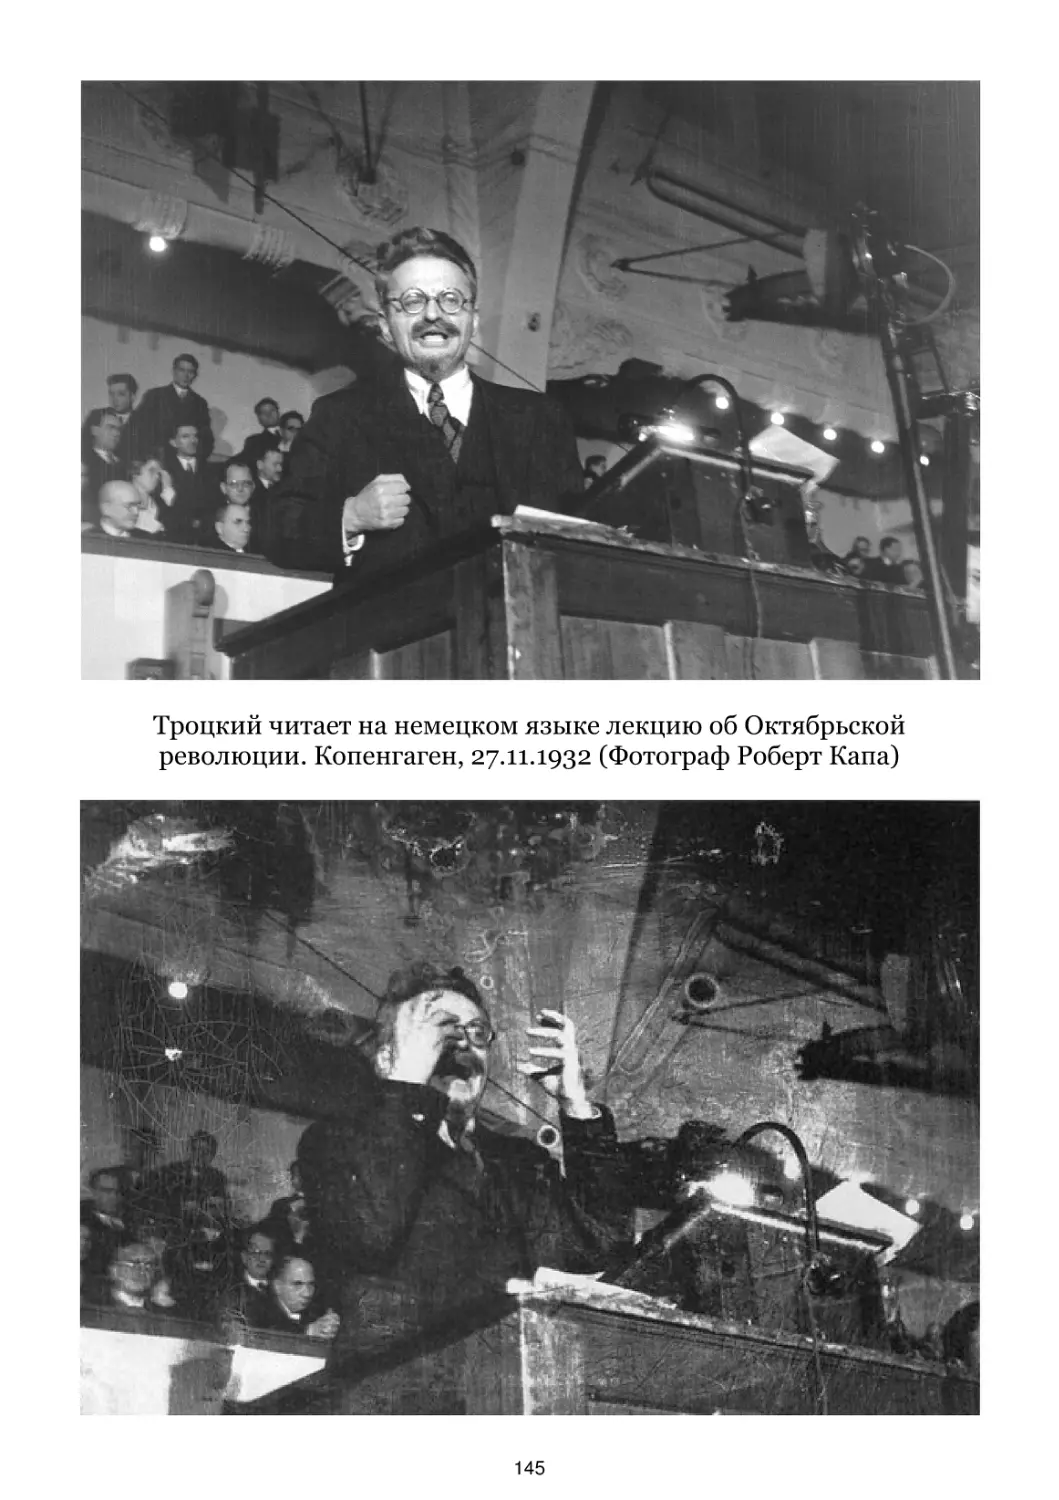 Троцкий читает лекцию об Октябрьской революции. Копенгаген, 27.11.1932